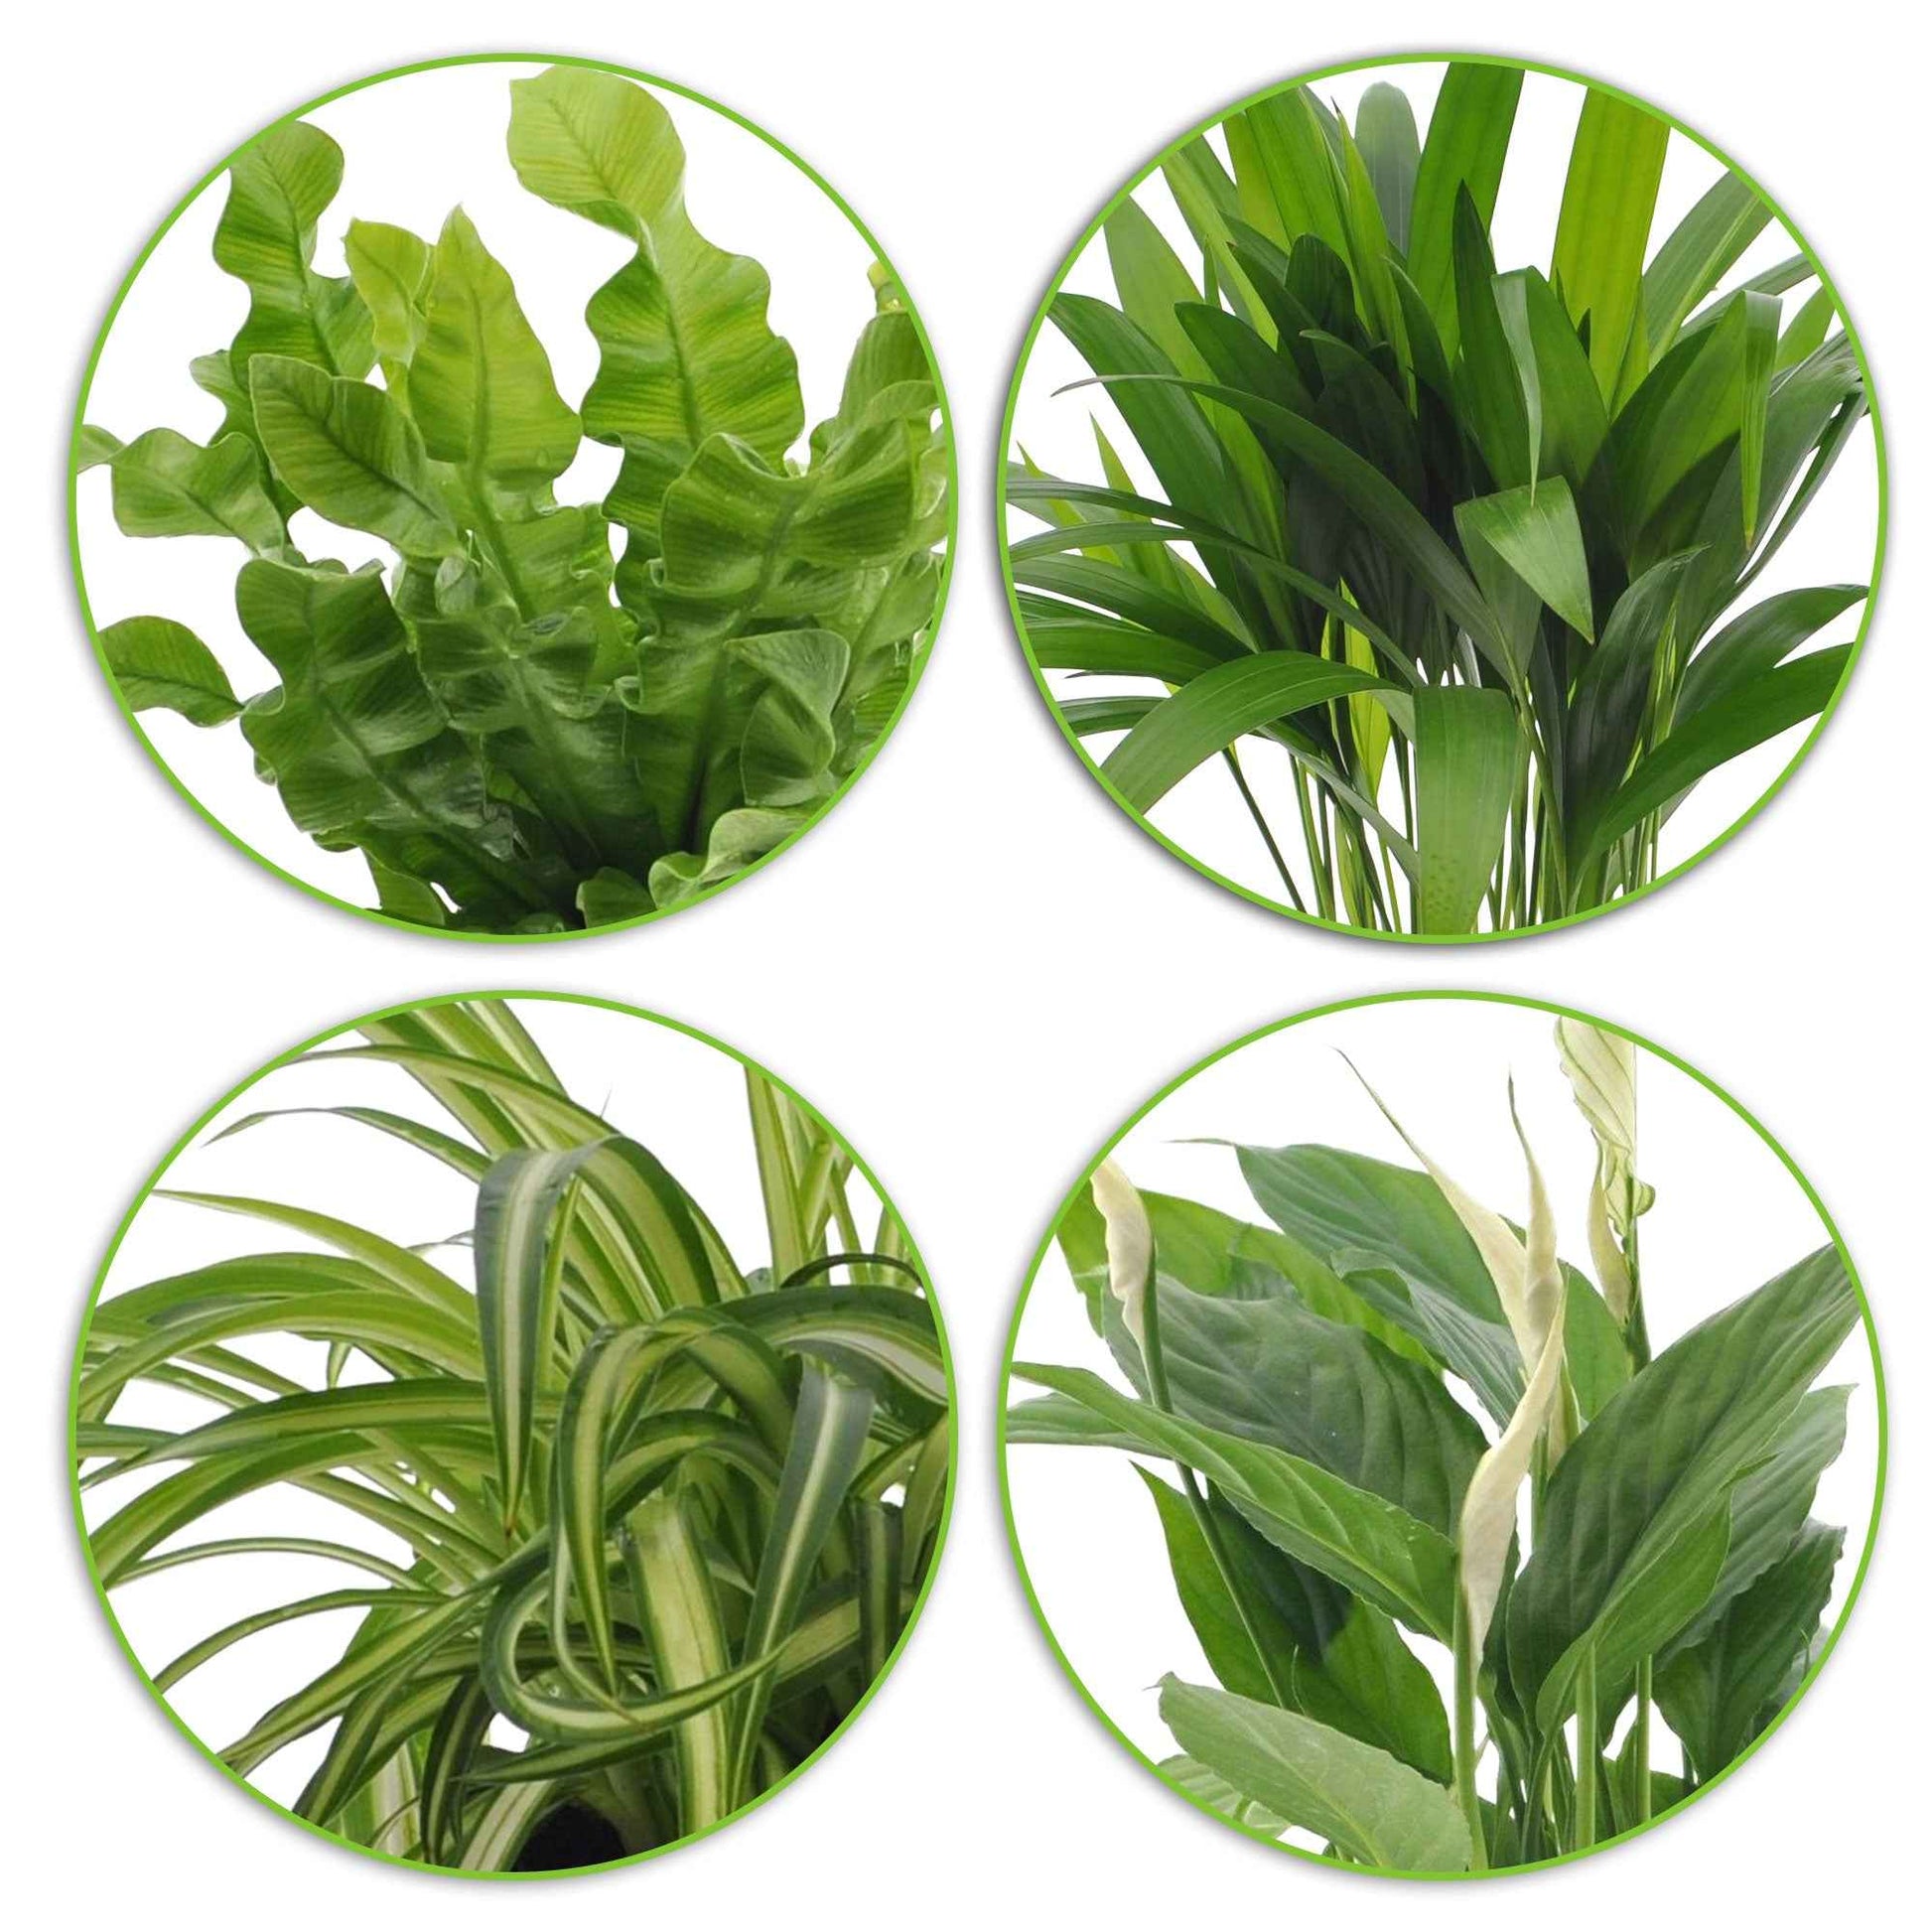 4x Luchtzuiverende kamerplanten - Mix incl. sierpotten groen en blauw - Groene kamerplanten